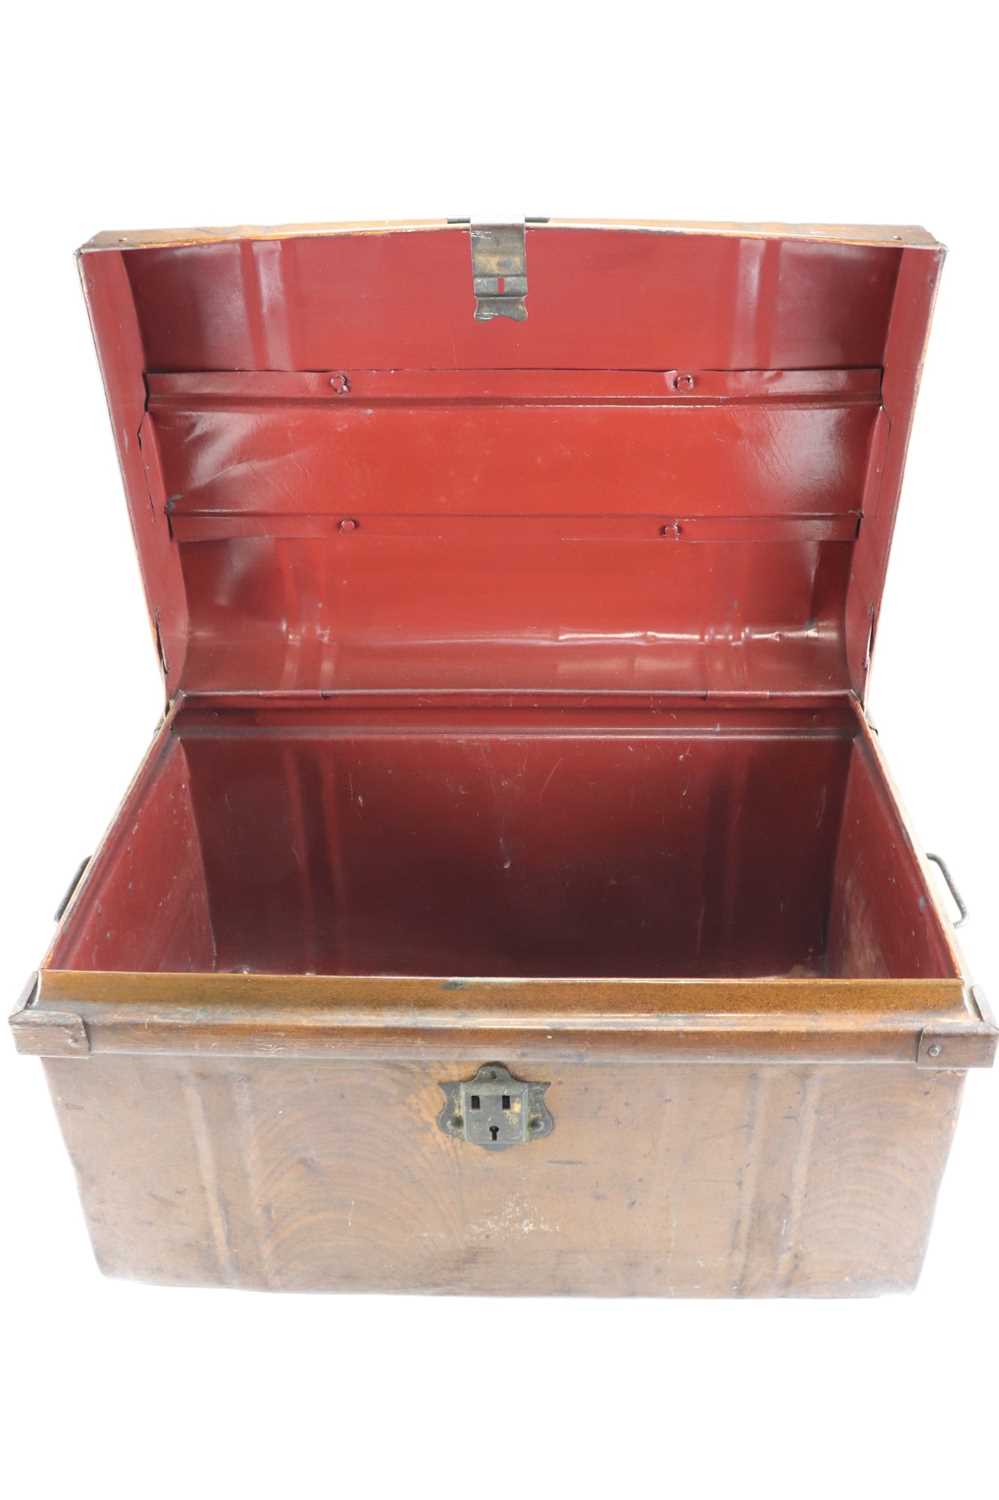 A Victorian scumbled tinplate luggage trunk, 60 cm x 41 cm x 40 cm